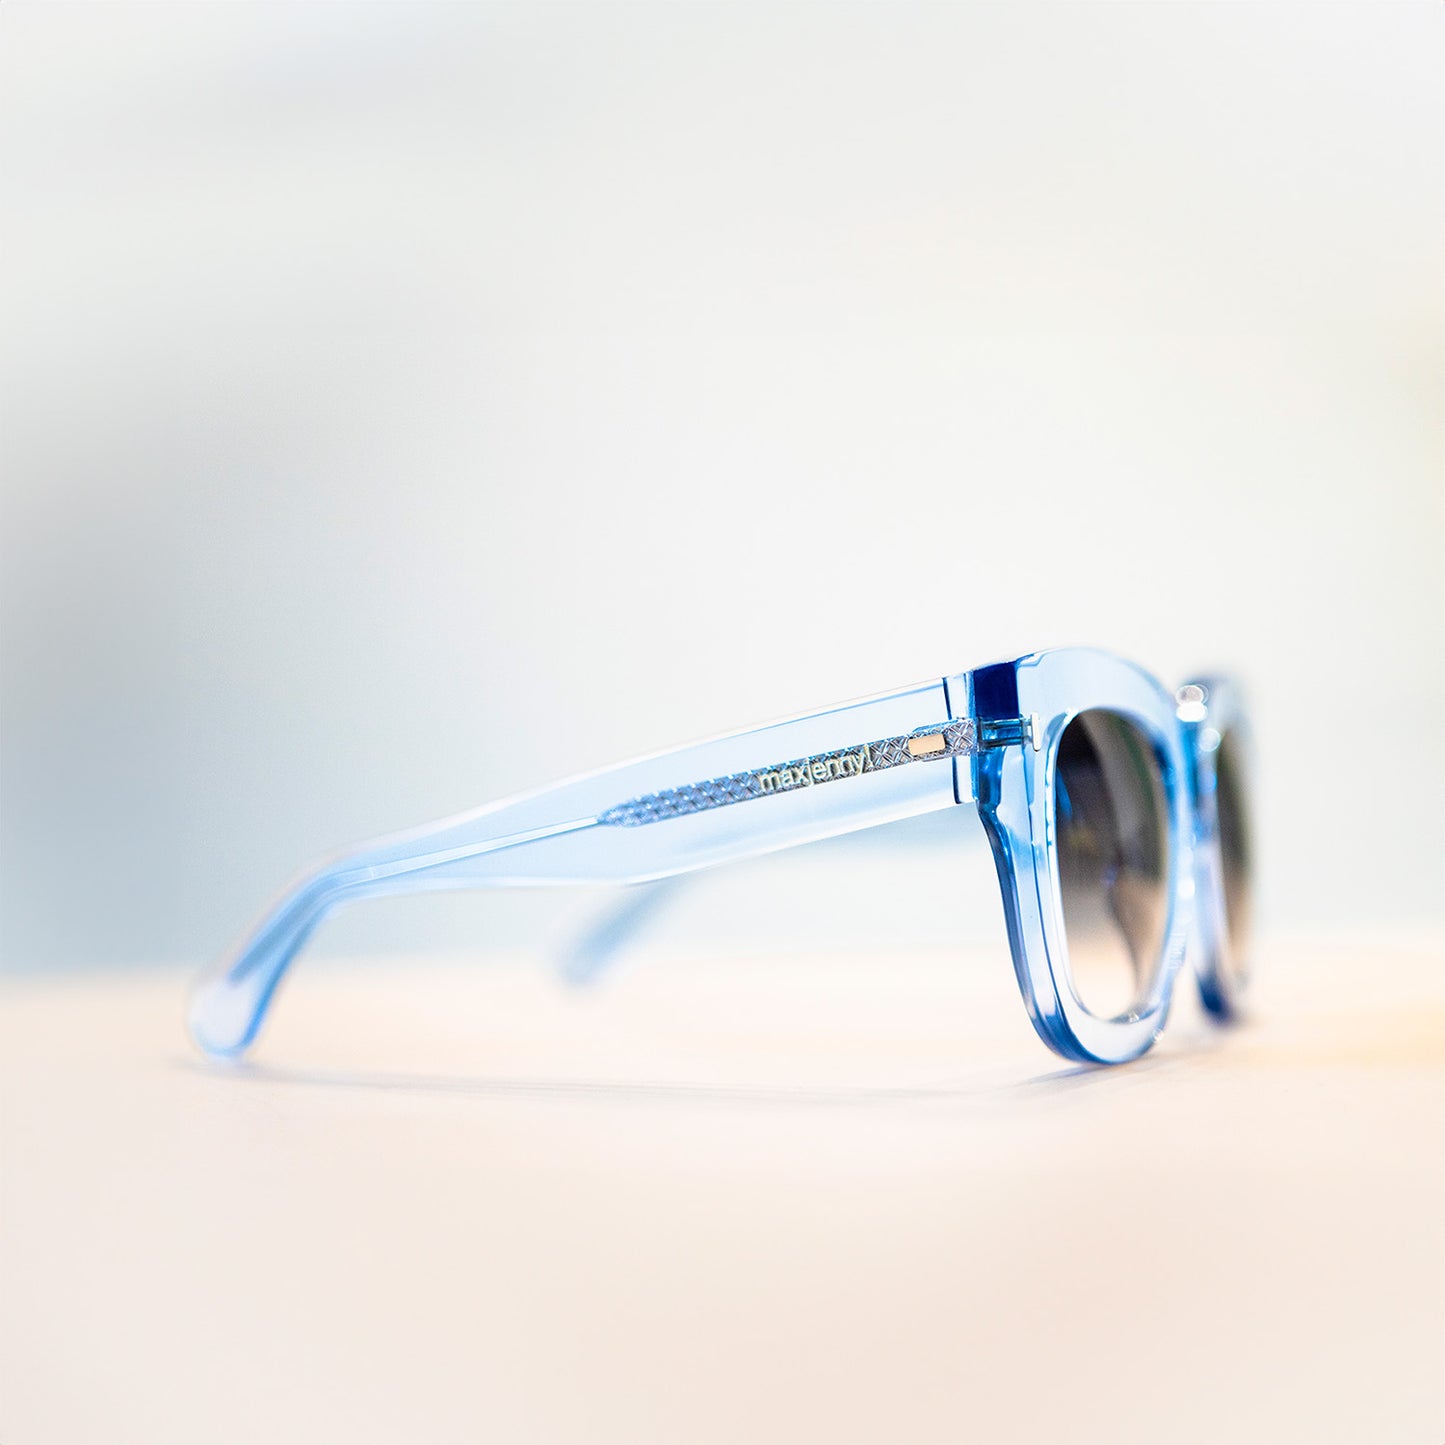 maxjenny! pflanzliche Brillen für Sonne und Optik hellblau